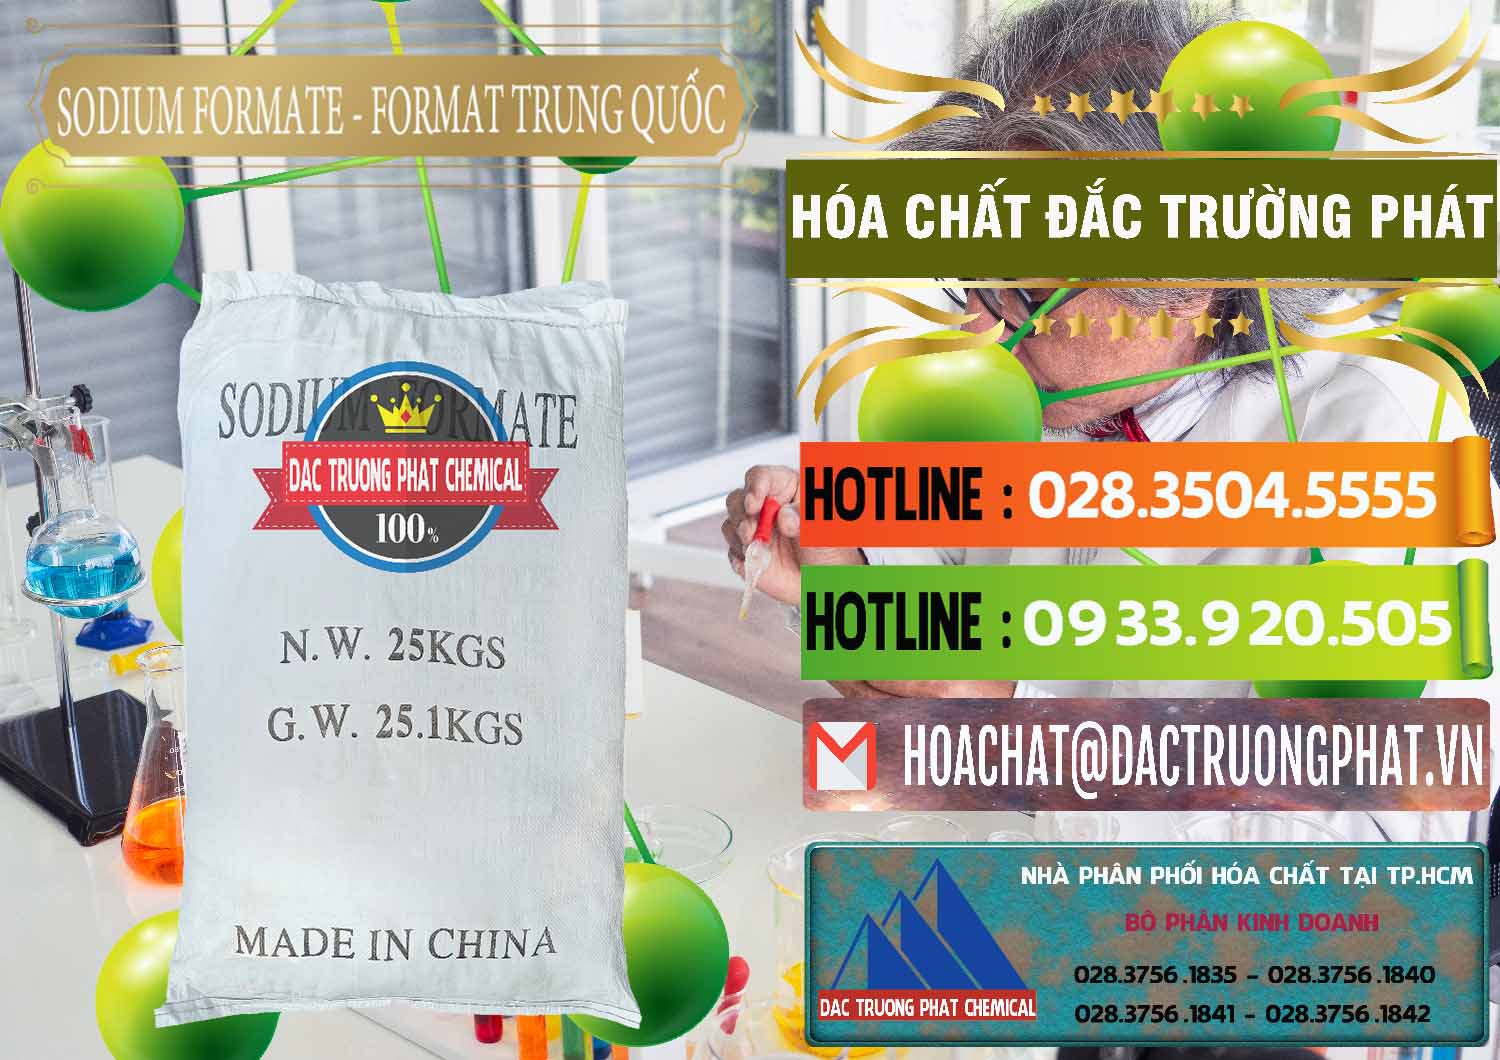 Chuyên cung ứng _ bán Sodium Formate - Natri Format Trung Quốc China - 0142 - Cty chuyên cung cấp _ nhập khẩu hóa chất tại TP.HCM - cungcaphoachat.com.vn